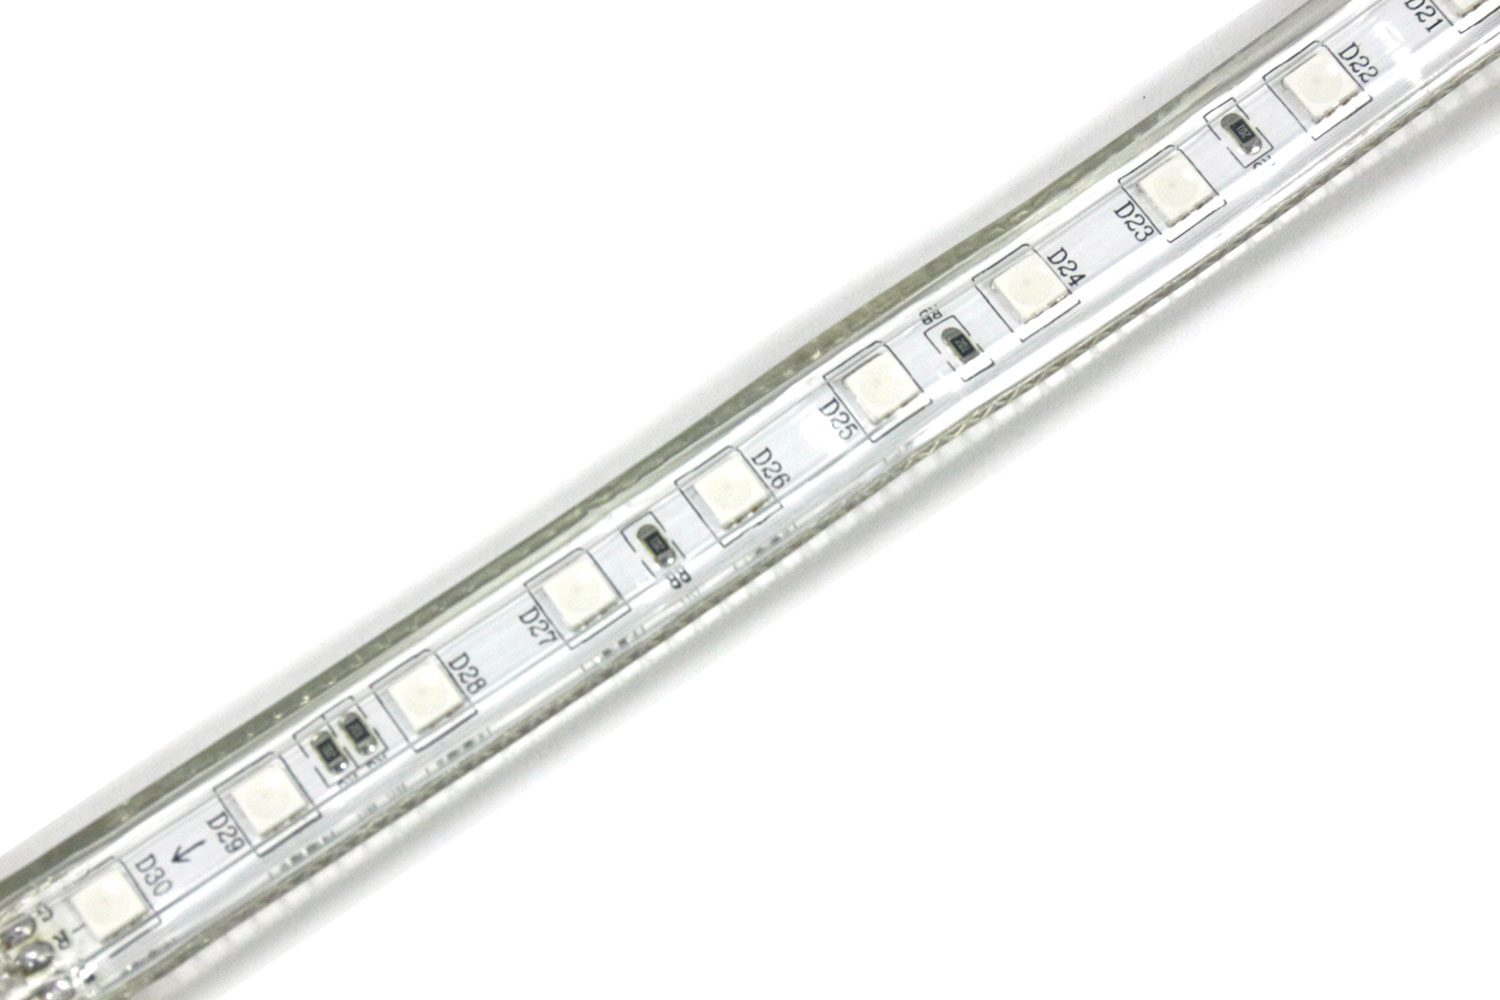 MG 7814 - High Voltage ETL Certification LED Strip Lights